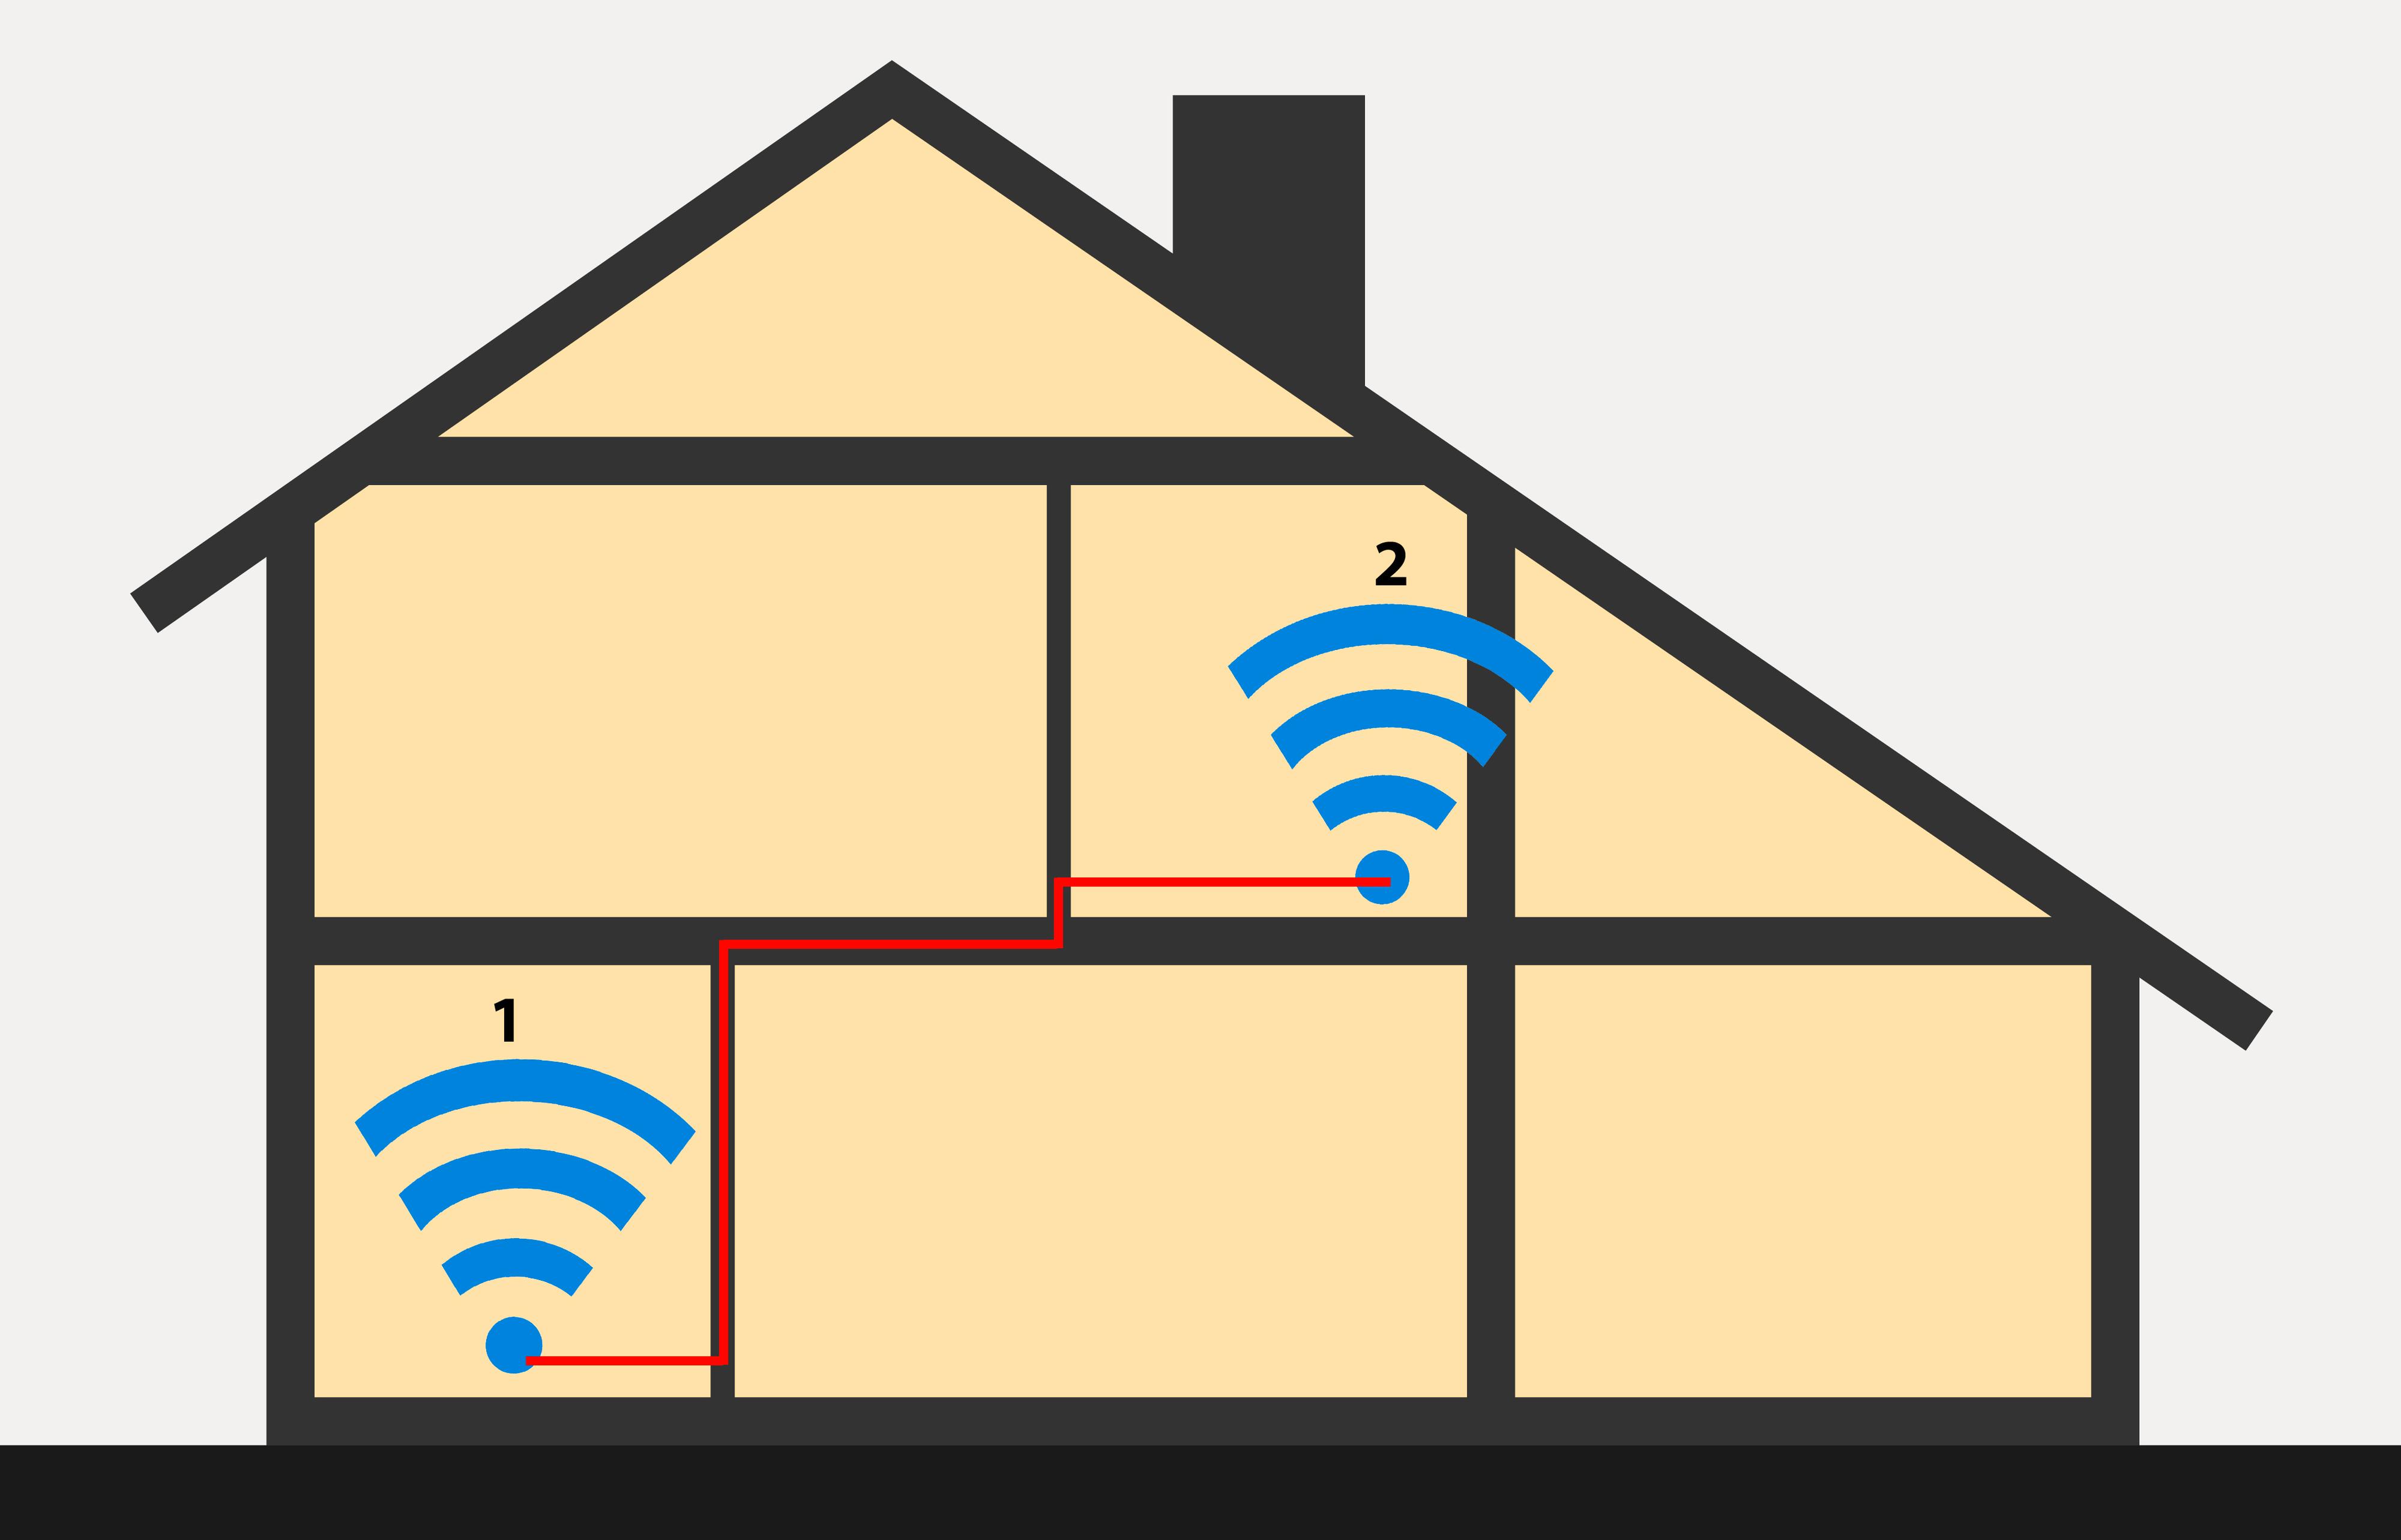 Trådløs ruter/aksesspunkt nummer 1 og 2 er forbundet med hverandre enten via en Ethernet-kabel eller med HomePlug-adaptere som gir nett via strømnettet.